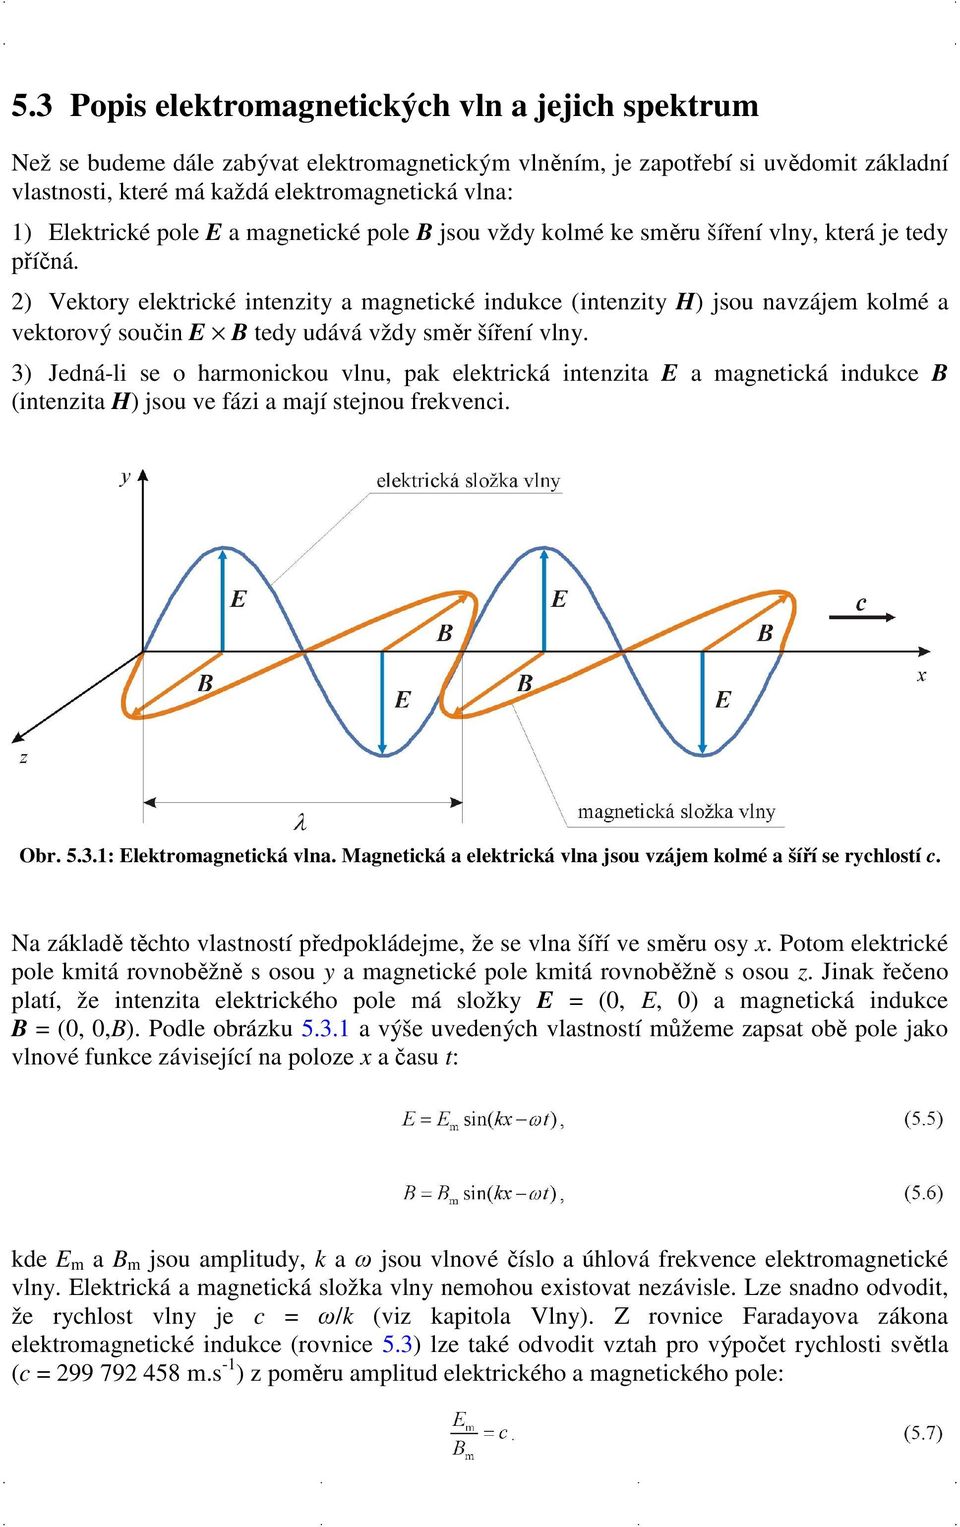 2) Vektory elektrické intenzity a magnetické indukce (intenzity H) jsou navzájem kolmé a vektorový součin E B tedy udává vždy směr šíření vlny.